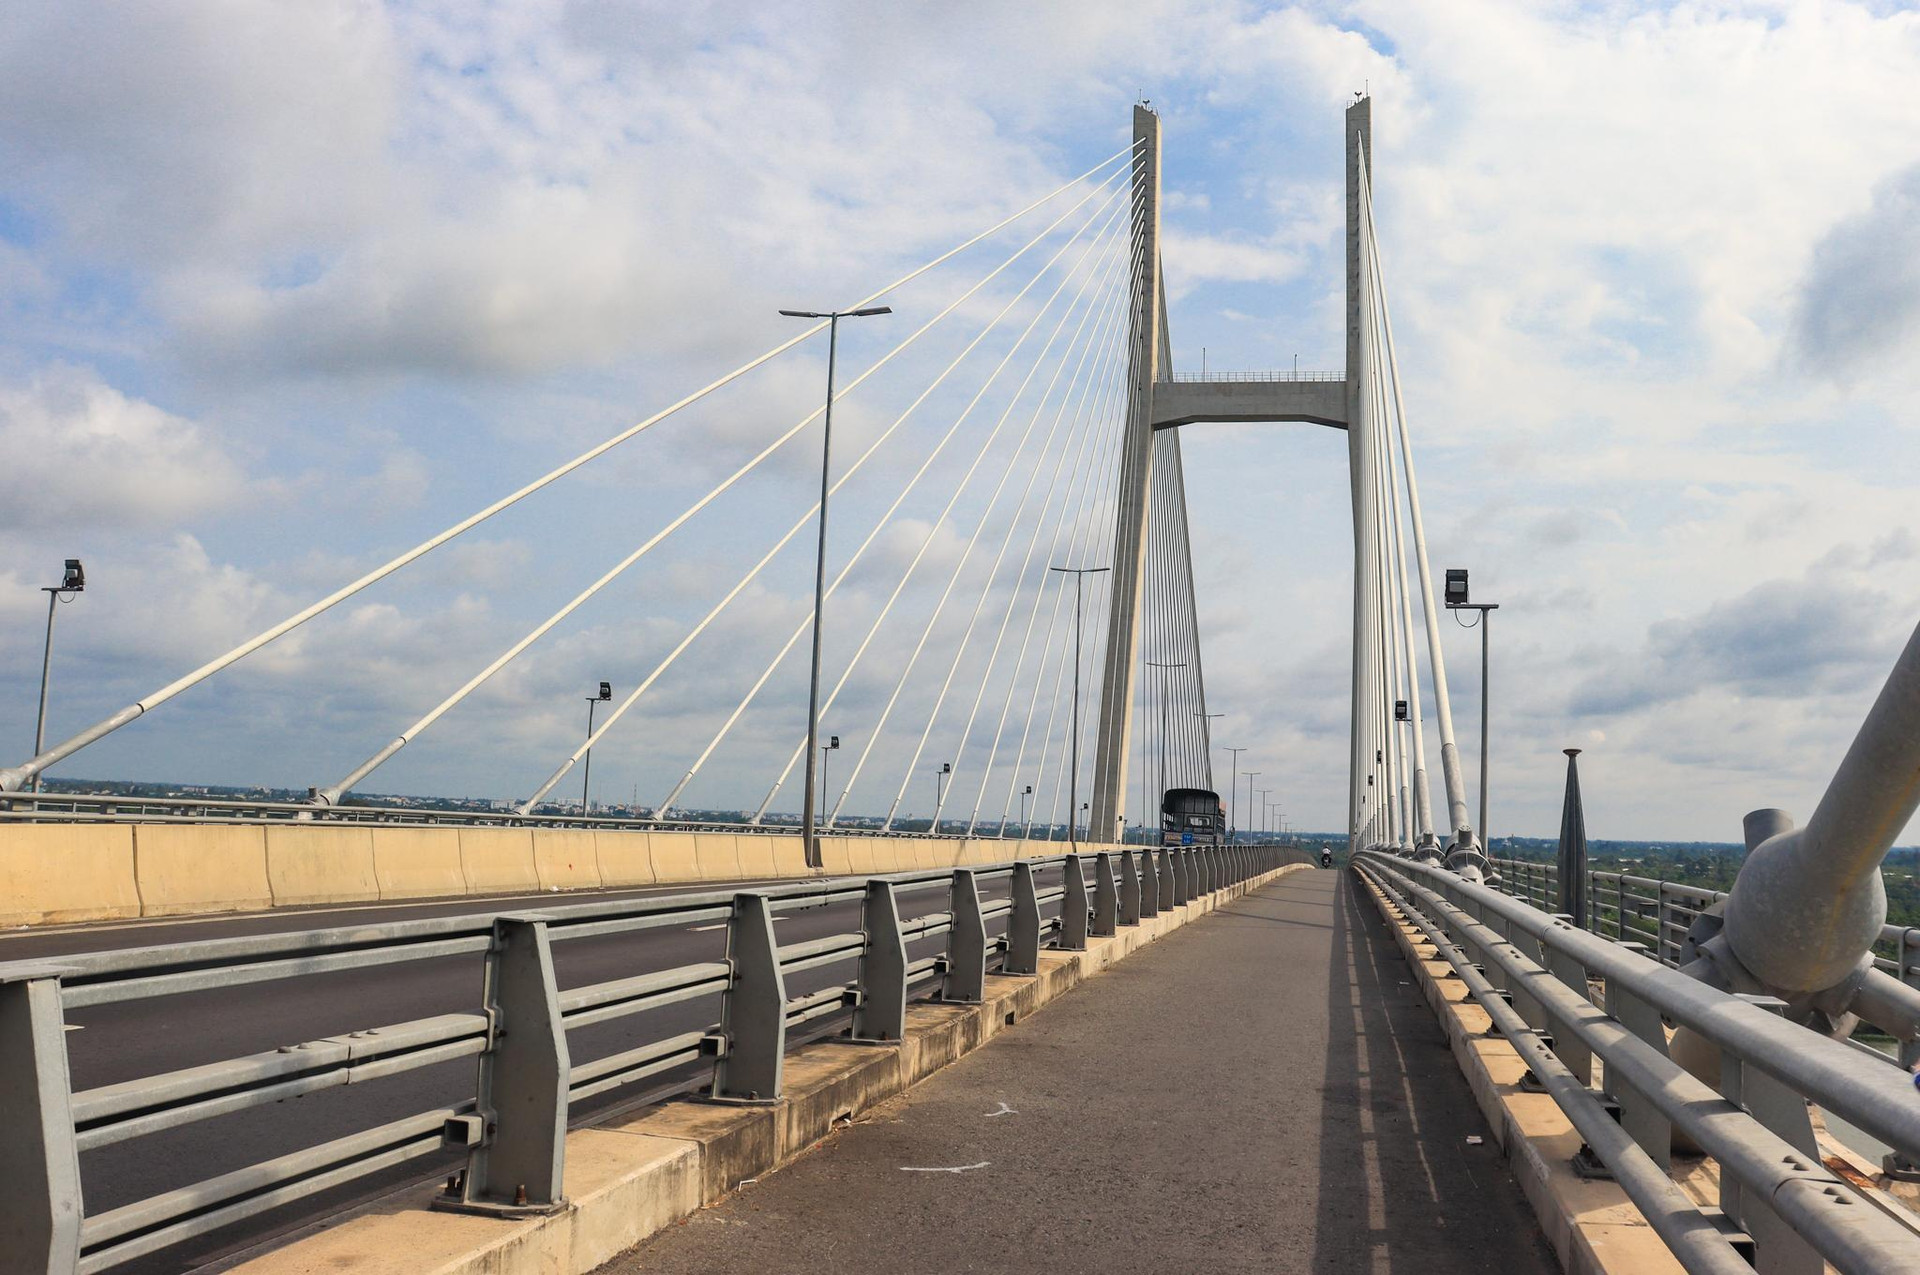 ‏Những cây cầu lịch sử giúp đường bộ vươn tới vùng sông nước miền Tây - Ảnh 11.